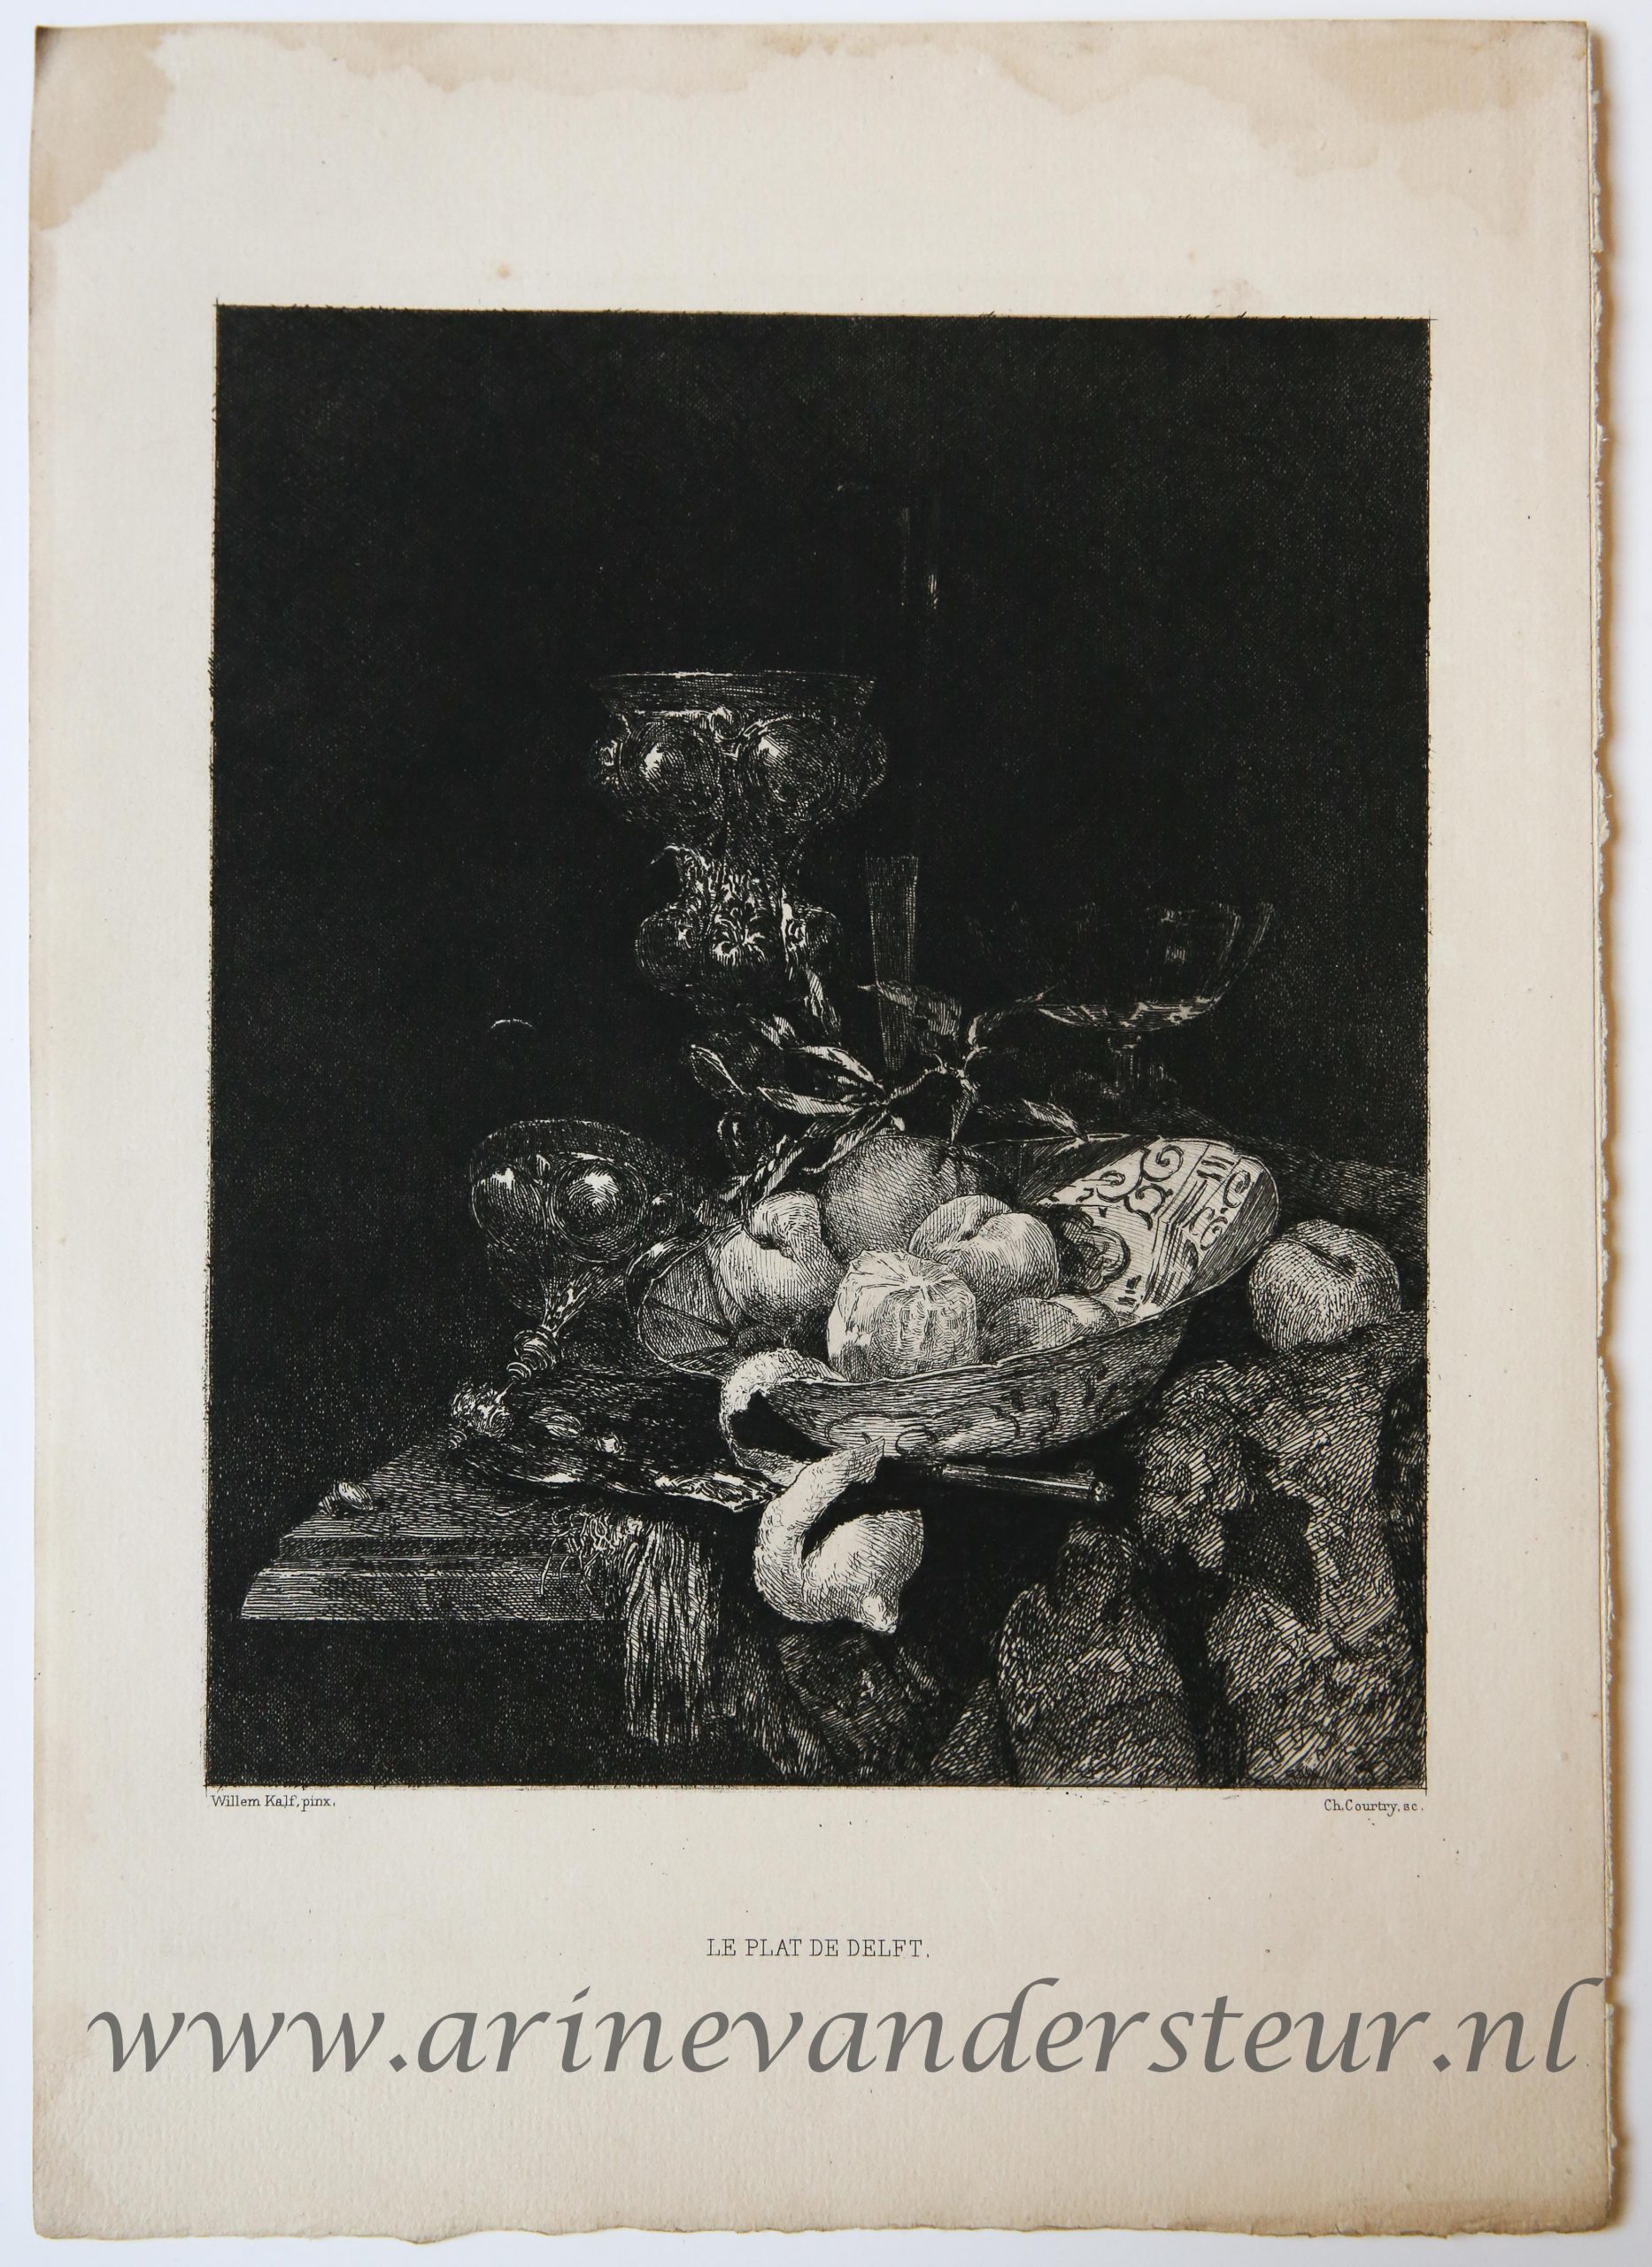 [Engraving/gravure by Ch. Courtry after Willem Kalf] Le plat de Delft, from the Catalogue de Tableaux de premier Ordre Anciens & Modernes Compasant La Galerie De M. John W. Wilson, 1881.